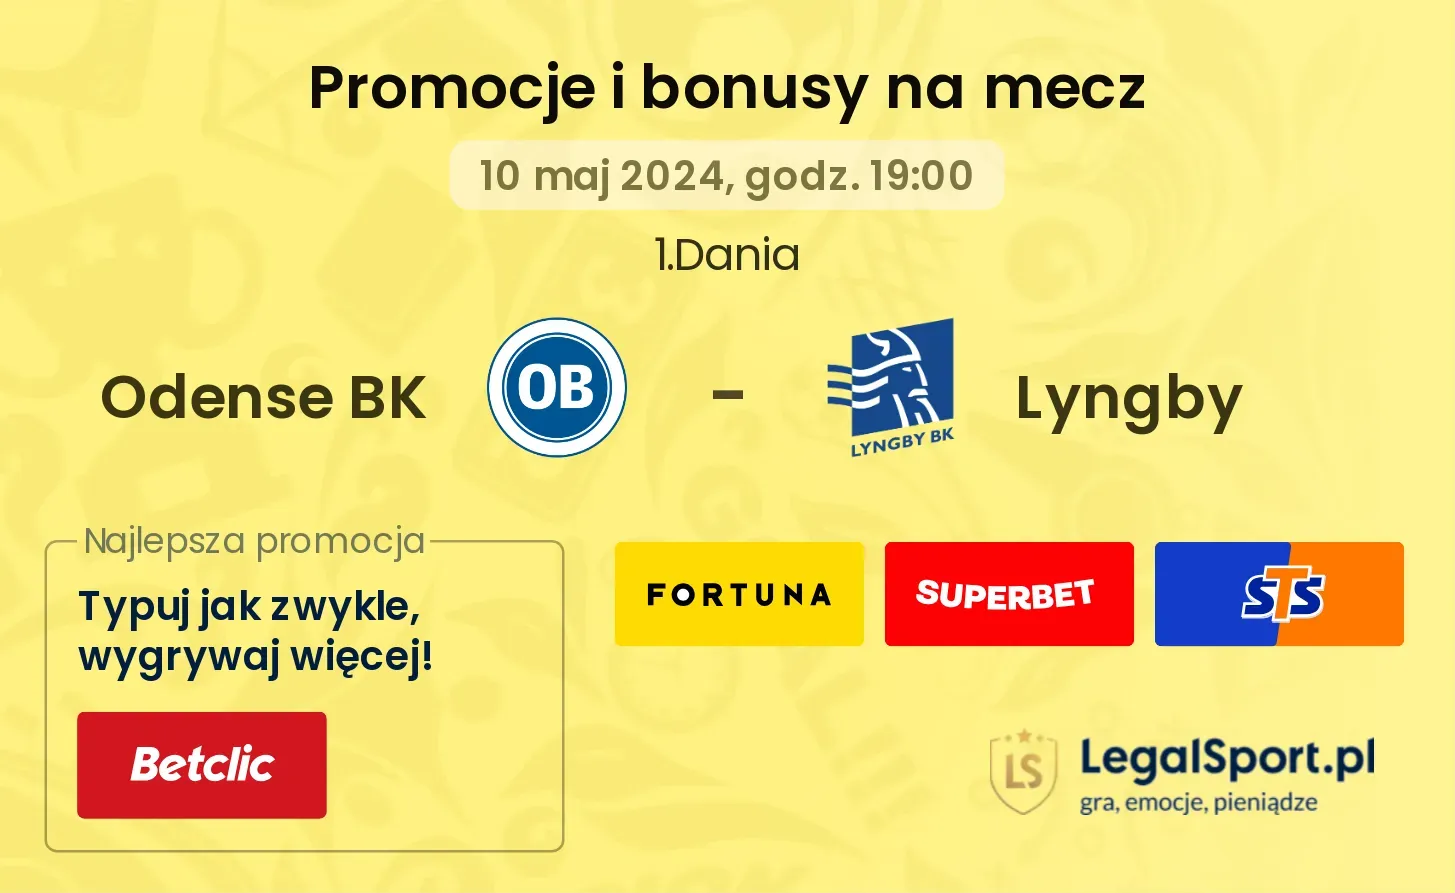 Odense BK - Lyngby promocje bonusy na mecz